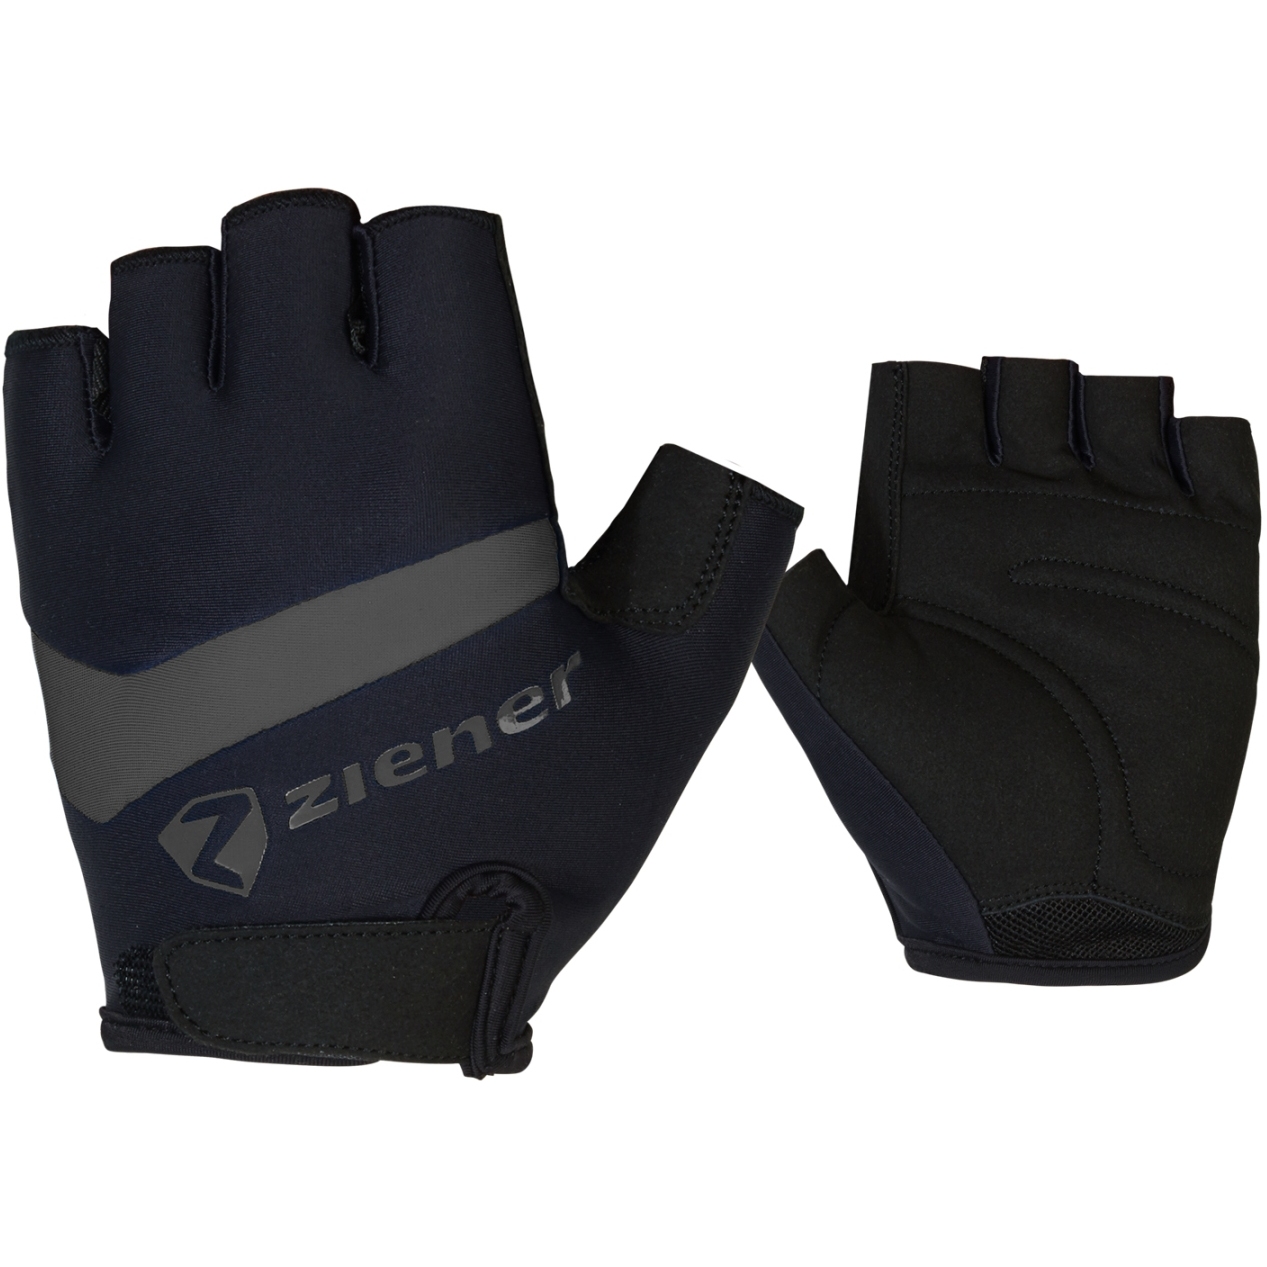 Picture of Ziener SMU20 Bike221 Gloves - black